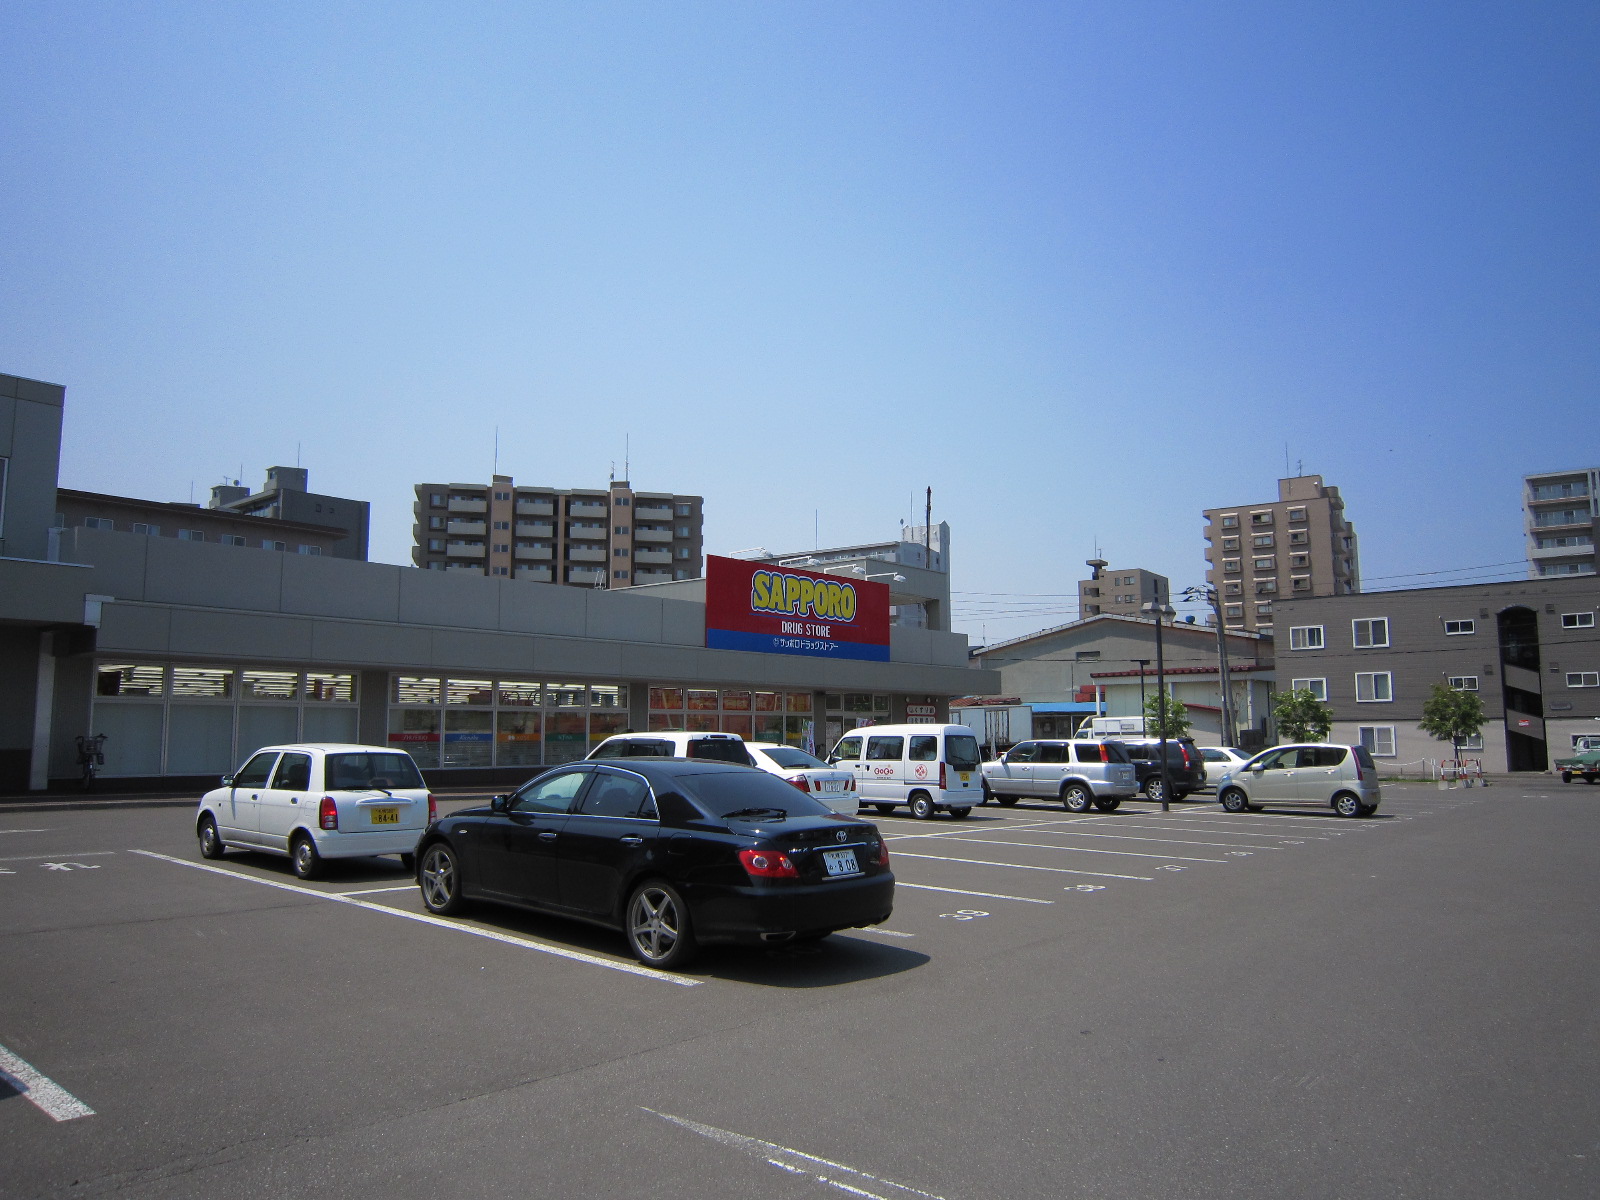 Dorakkusutoa. Sapporo drugstores Higashisapporo shop 832m until (drugstore)